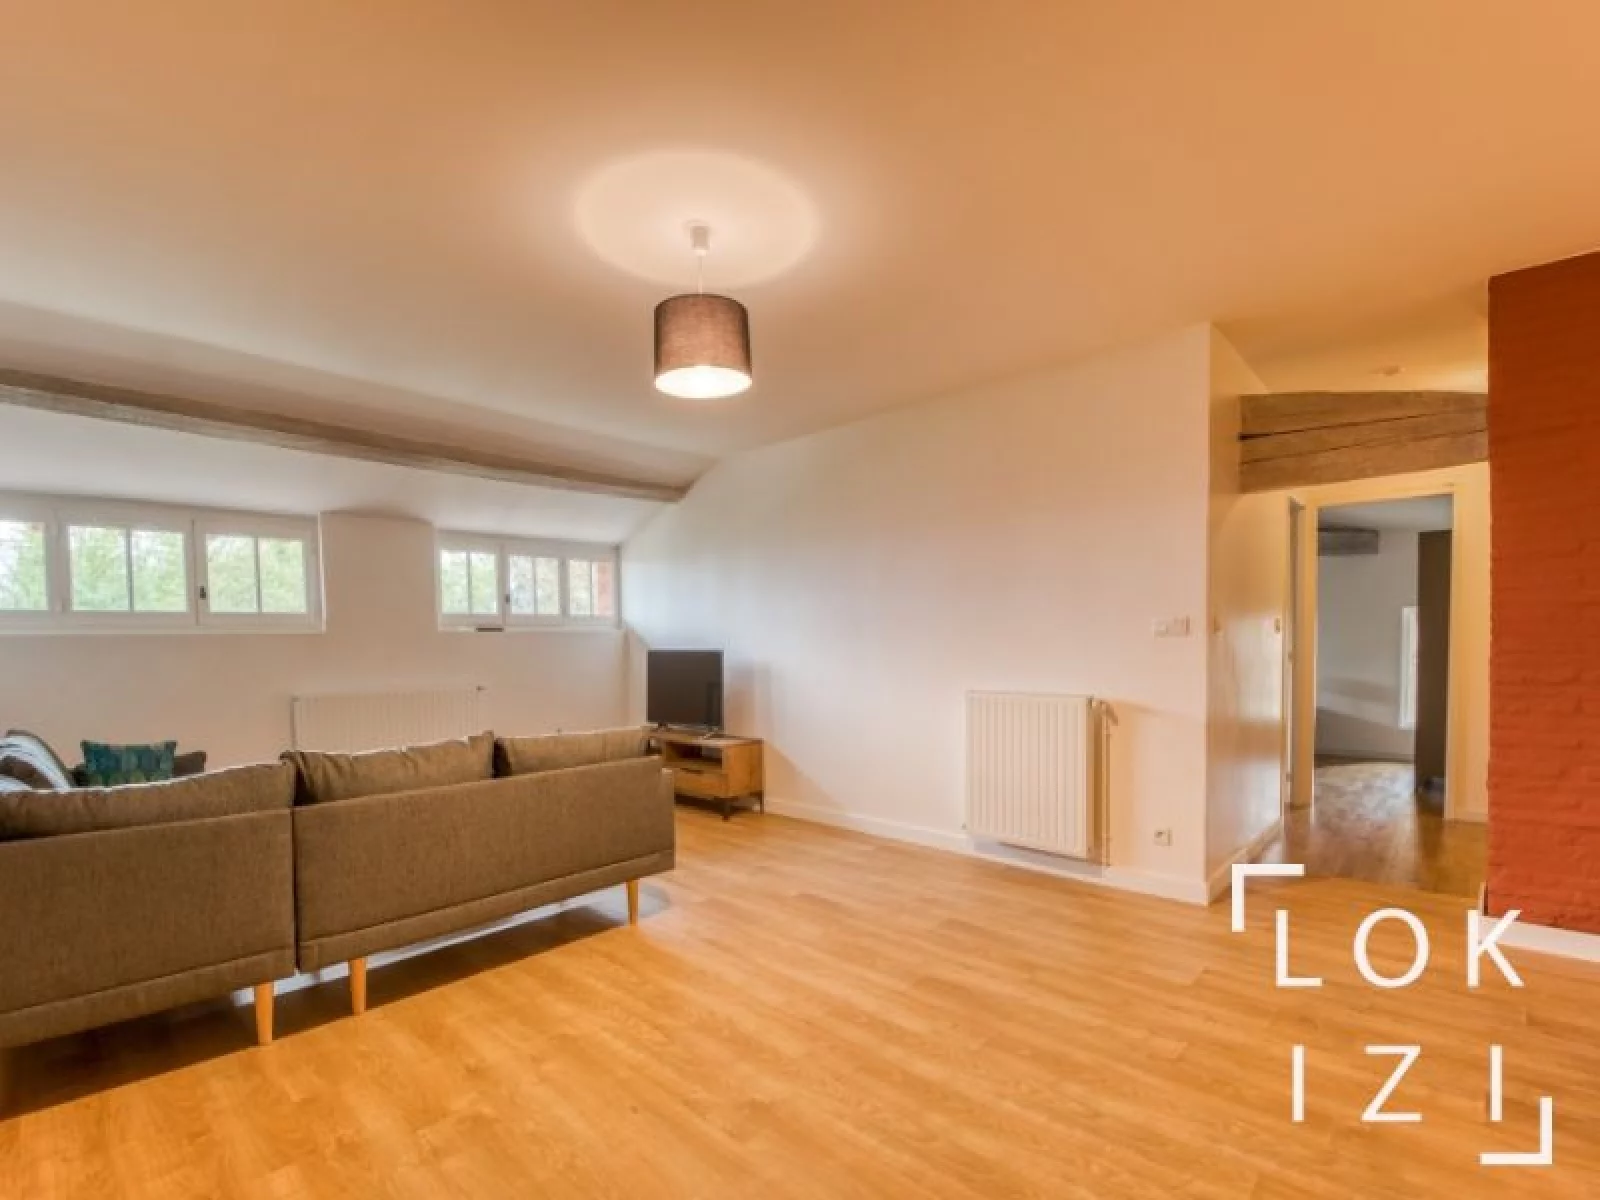 Location appartement meublé 3 pièces 110m² (Toulouse - Villeneuve les Bouloc)